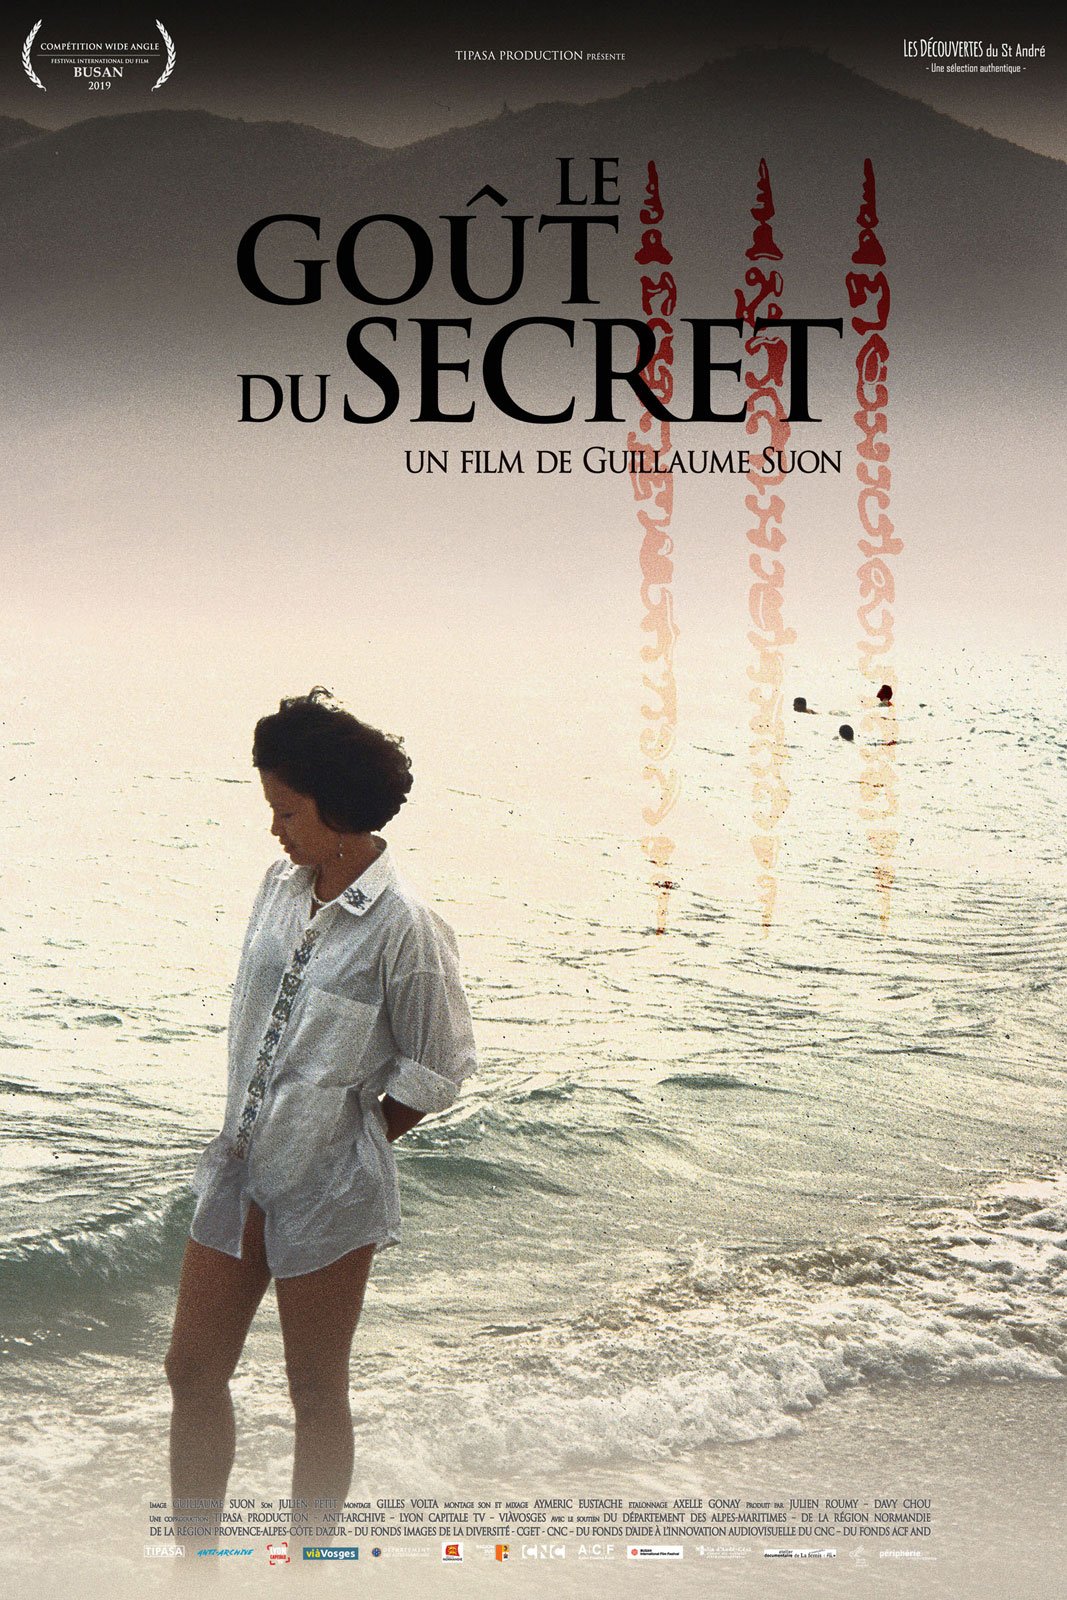 Le secret : Oser le rêve (Film, 2019) — CinéSérie